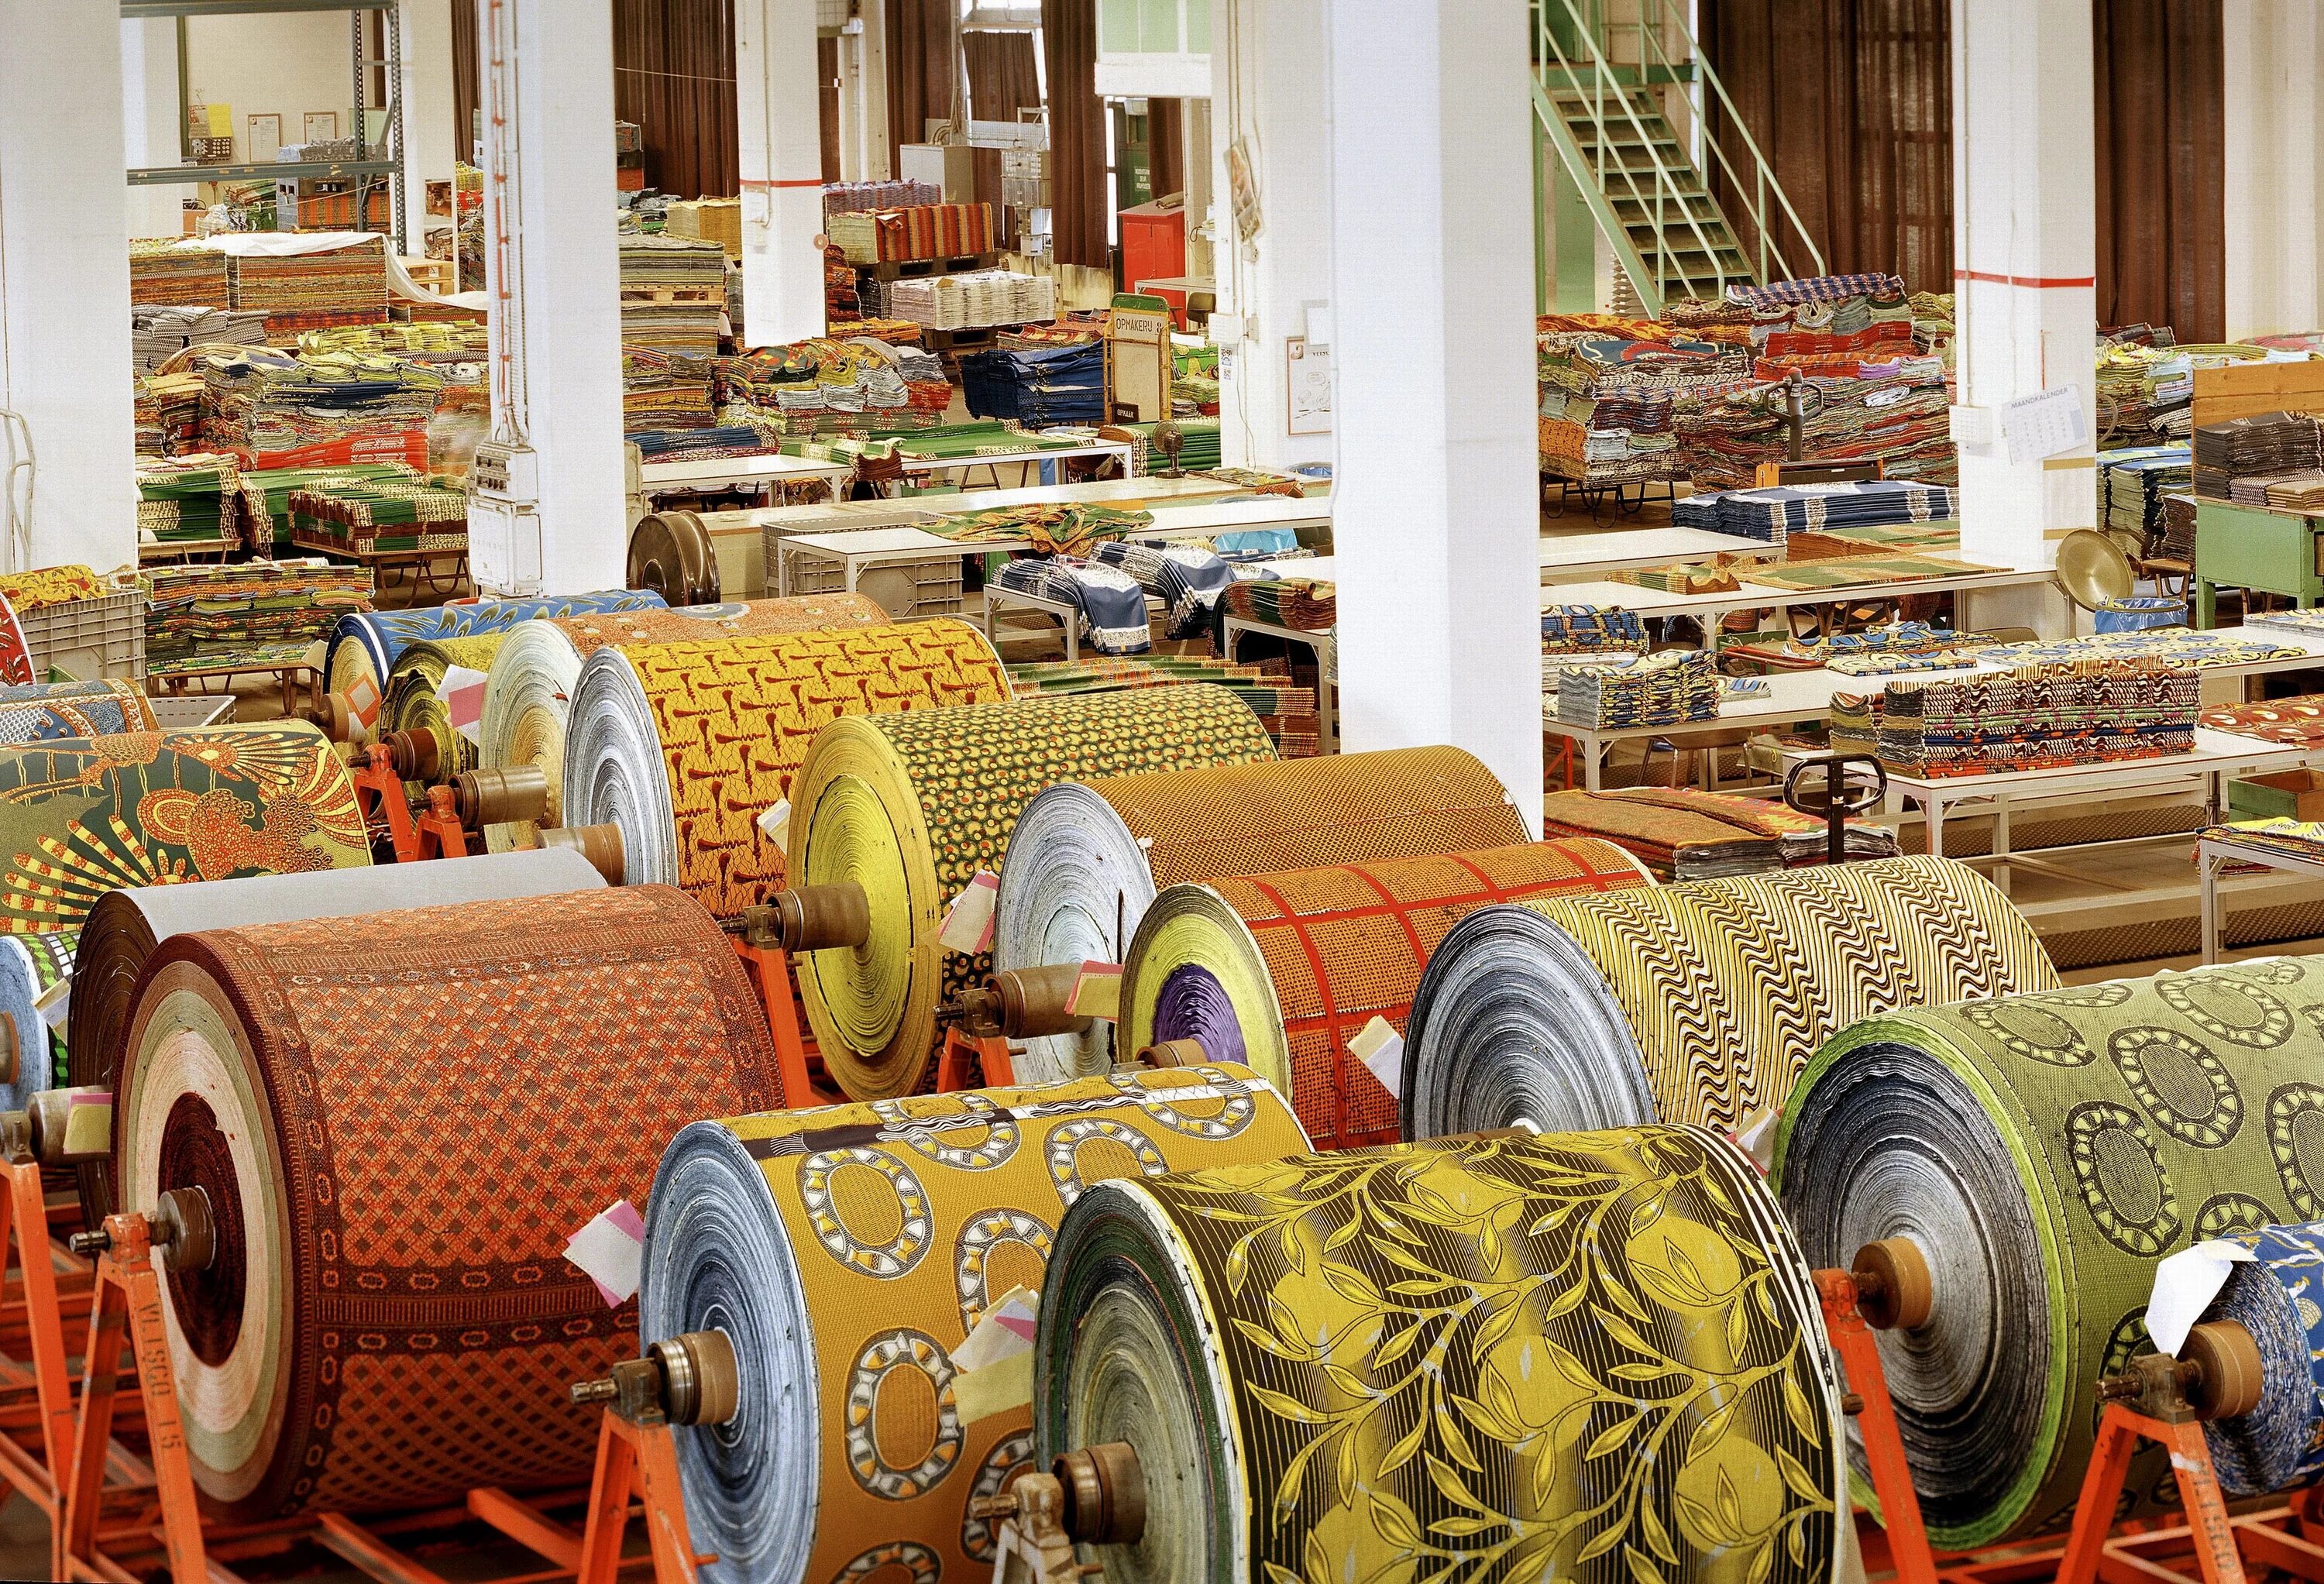 Сайт текстильной фабрики. Текстильное производство. Текстильная промышленность. Текстиль промышленность. Легкая промышленность текстиль.